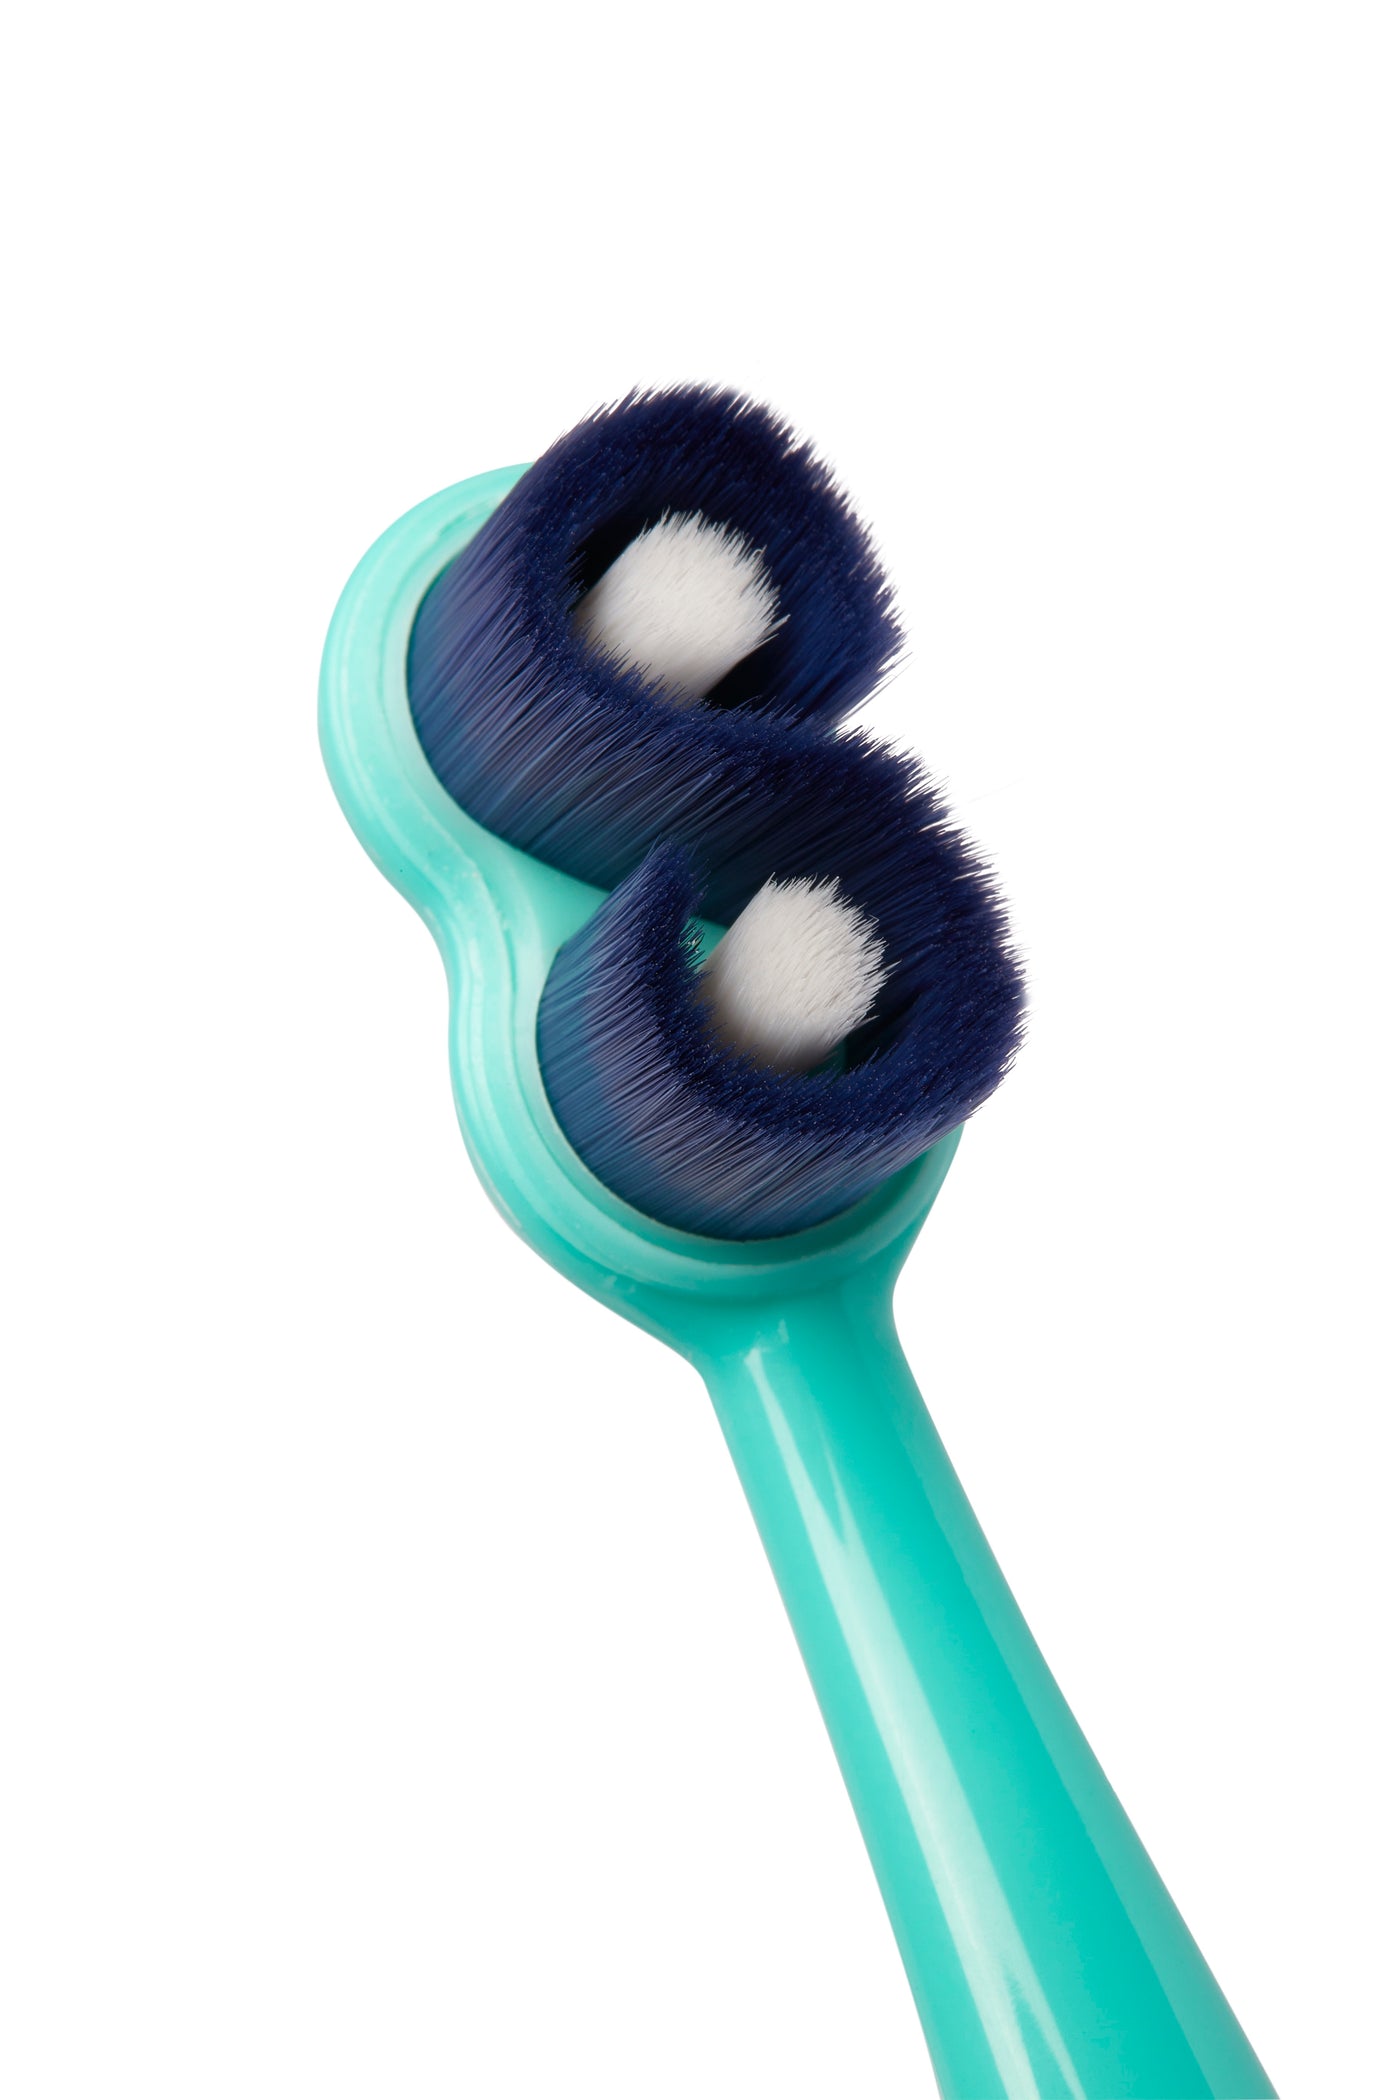 SuperBrush Manual Toothbrush